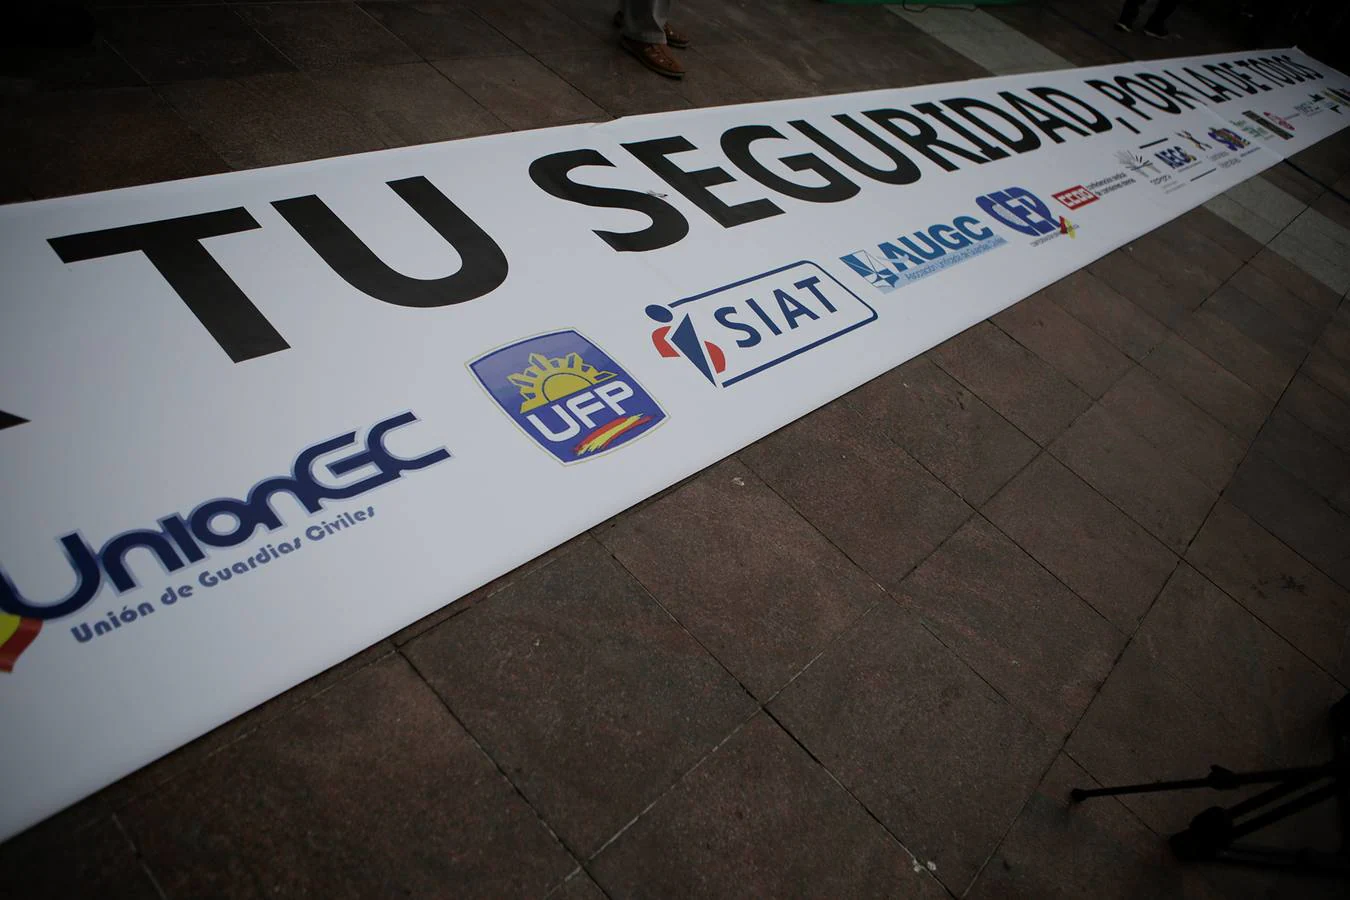 FOTOS: Concentración en Algeciras contra el narcotráfico